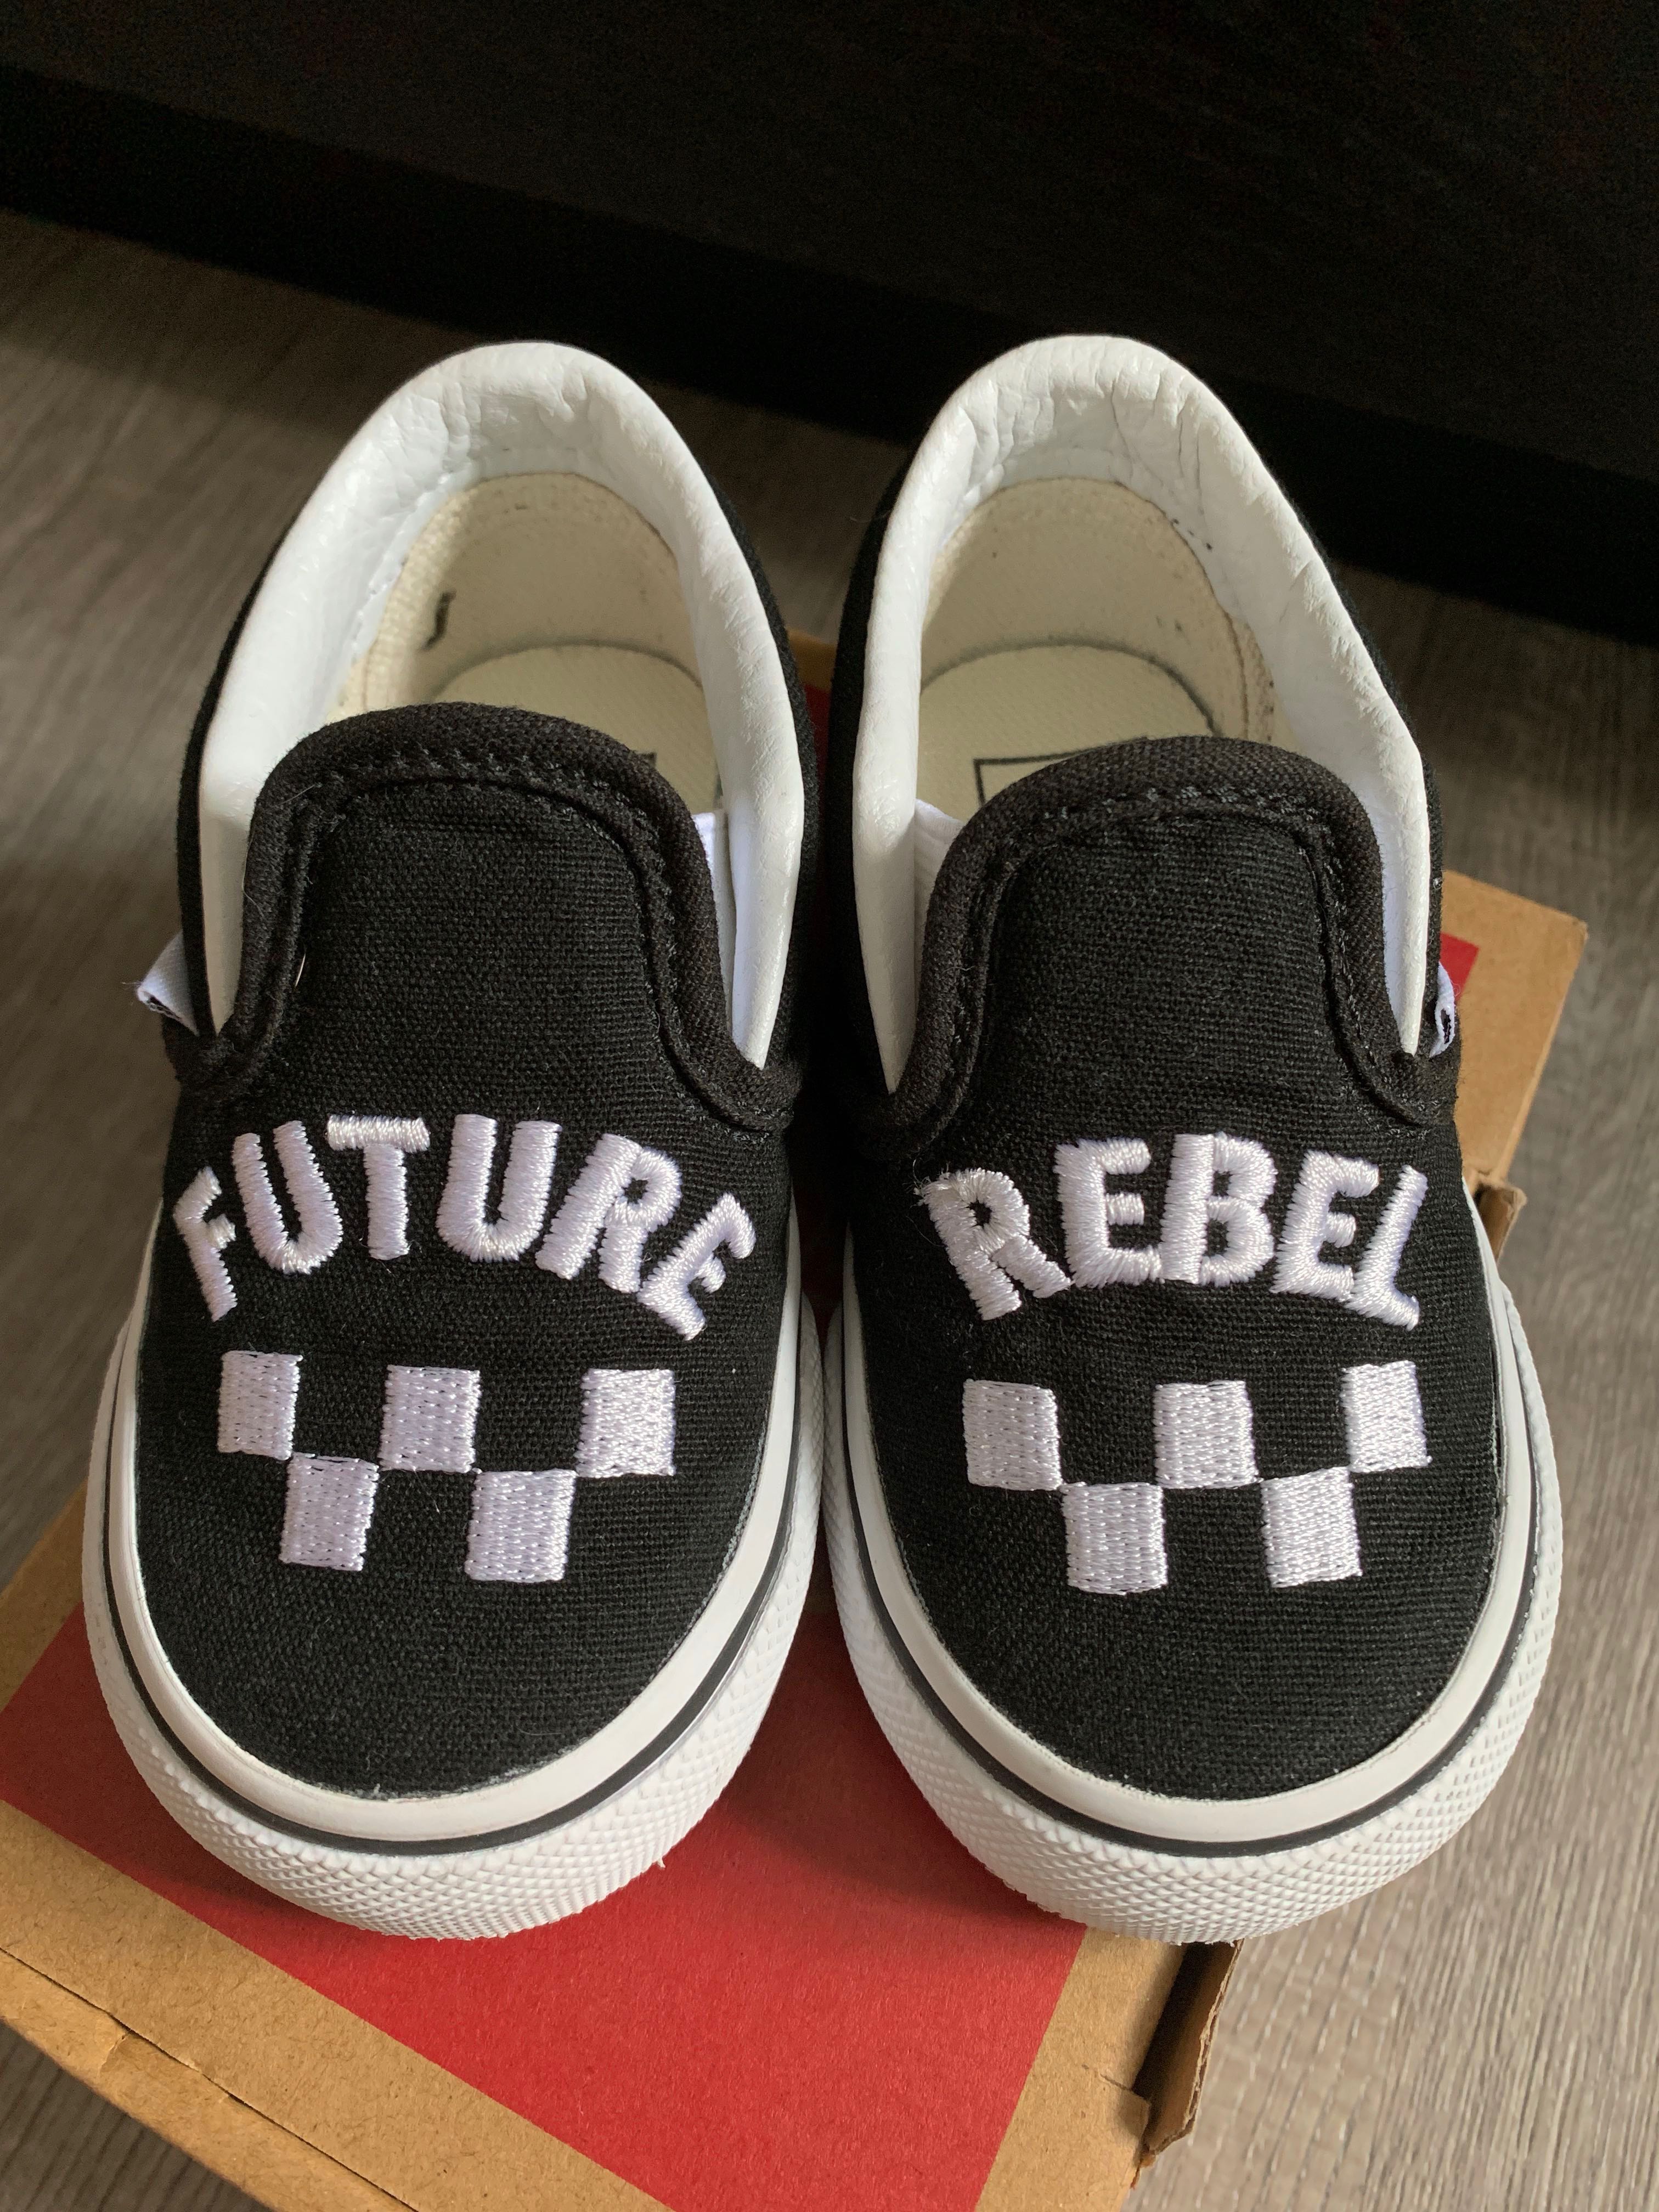 rebel infant shoes